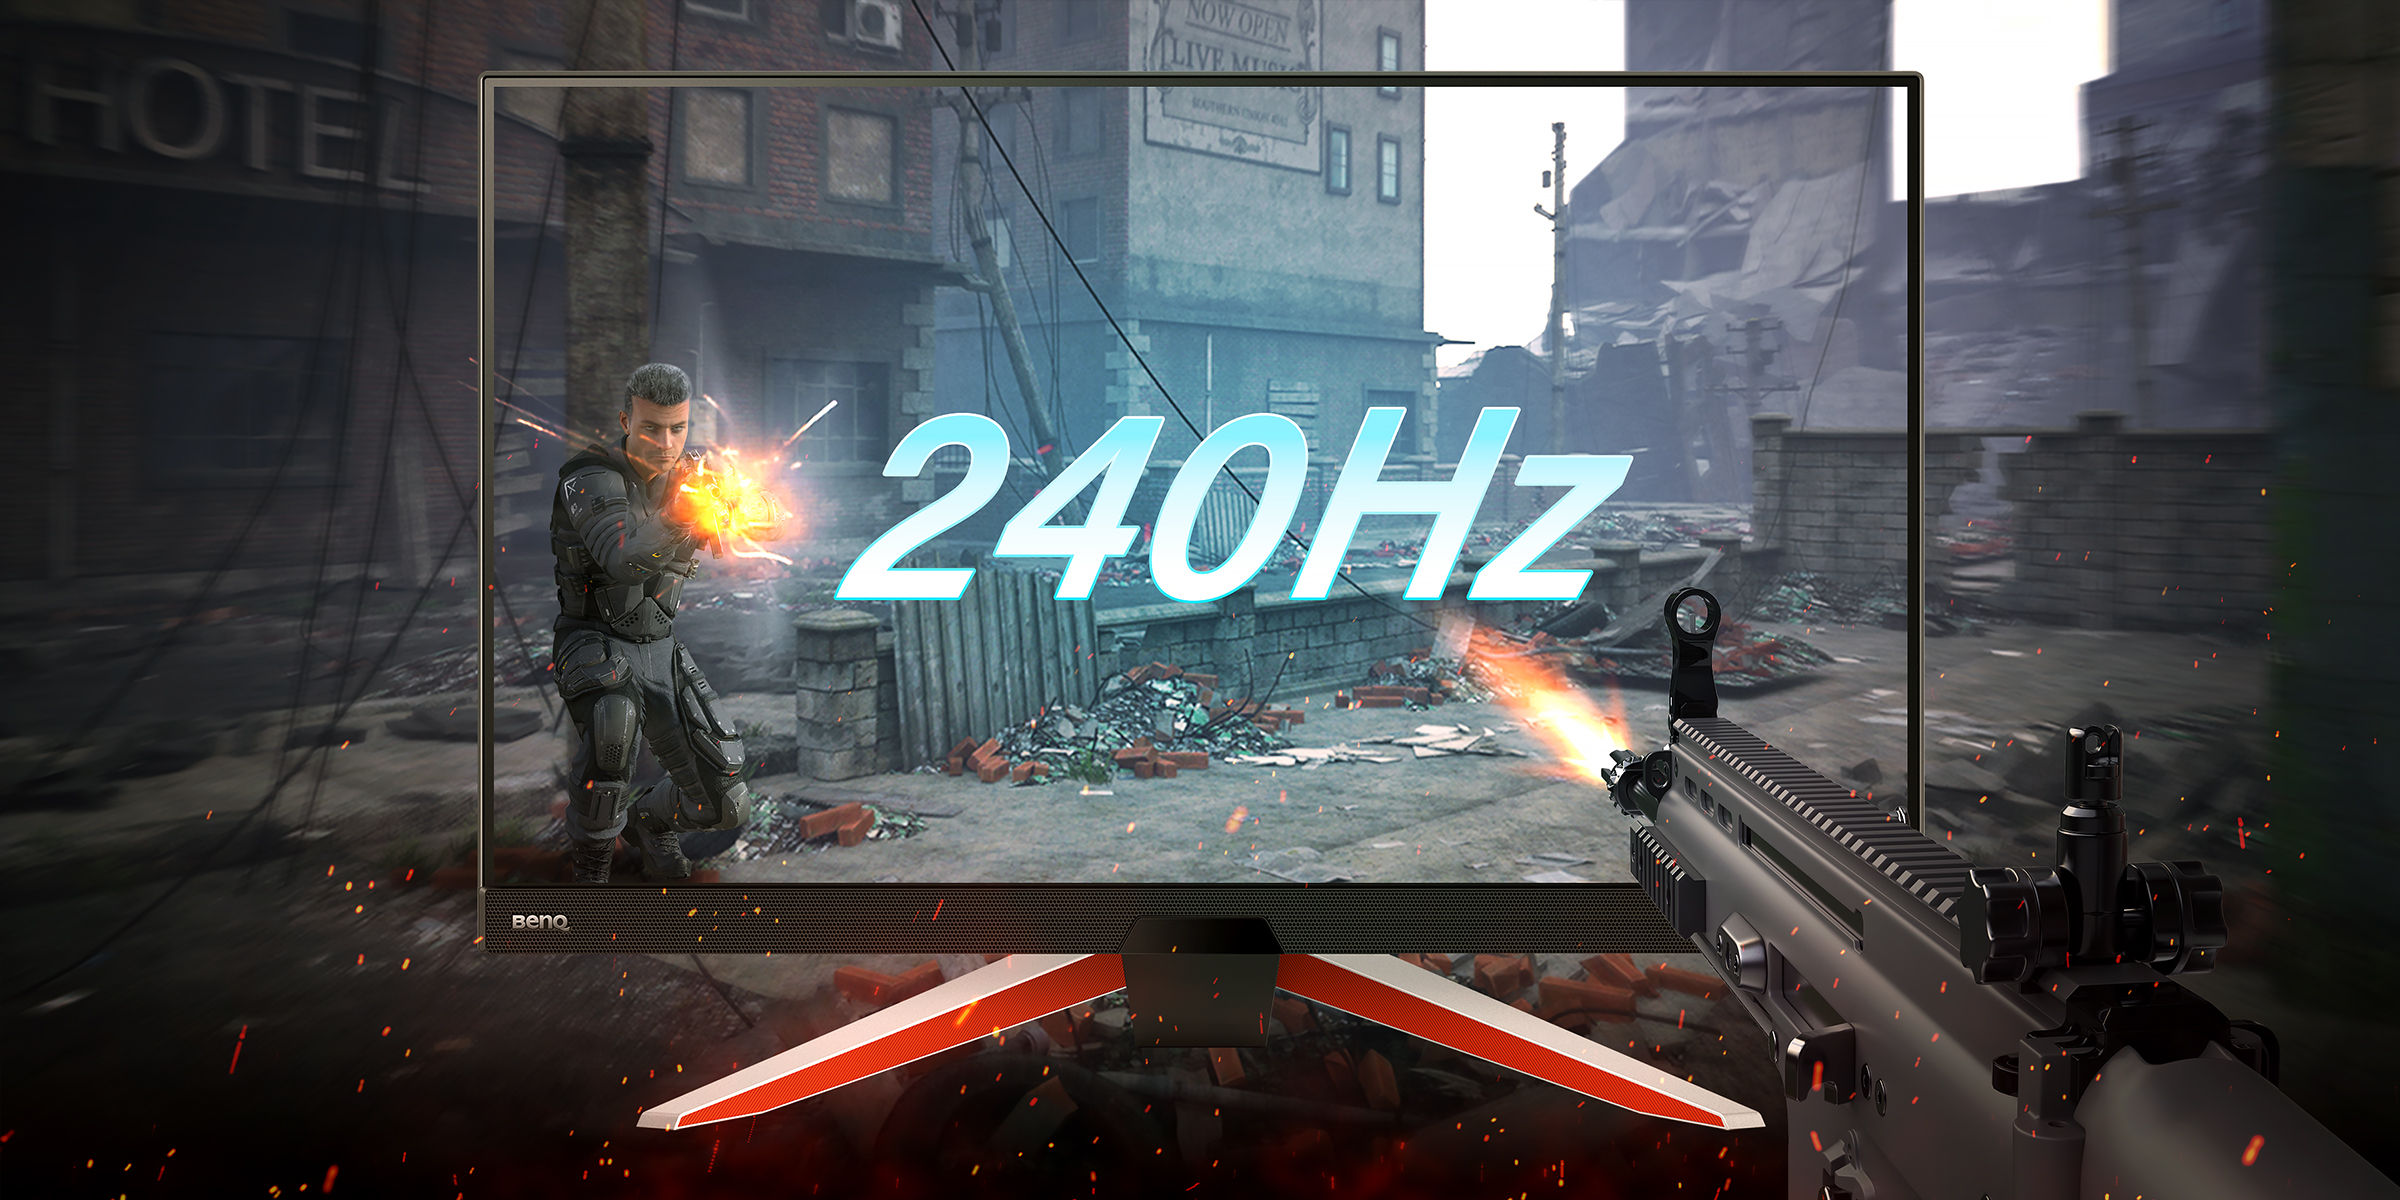 Un écran 240 Hz pour du gaming, cela vaut-il le coup ?